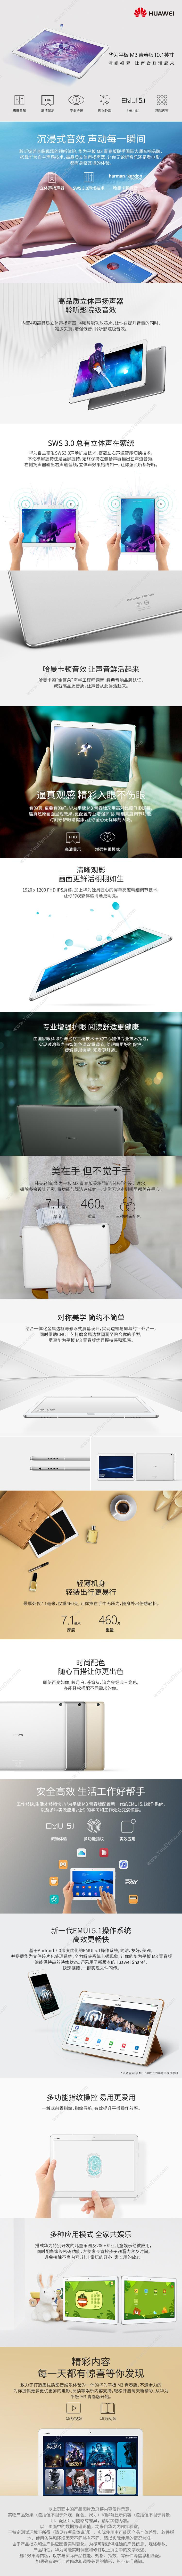 华为 Huawei BAH-AL00 M3青春版 10.1英寸 4G内存/64G存储 全网通 平板电脑